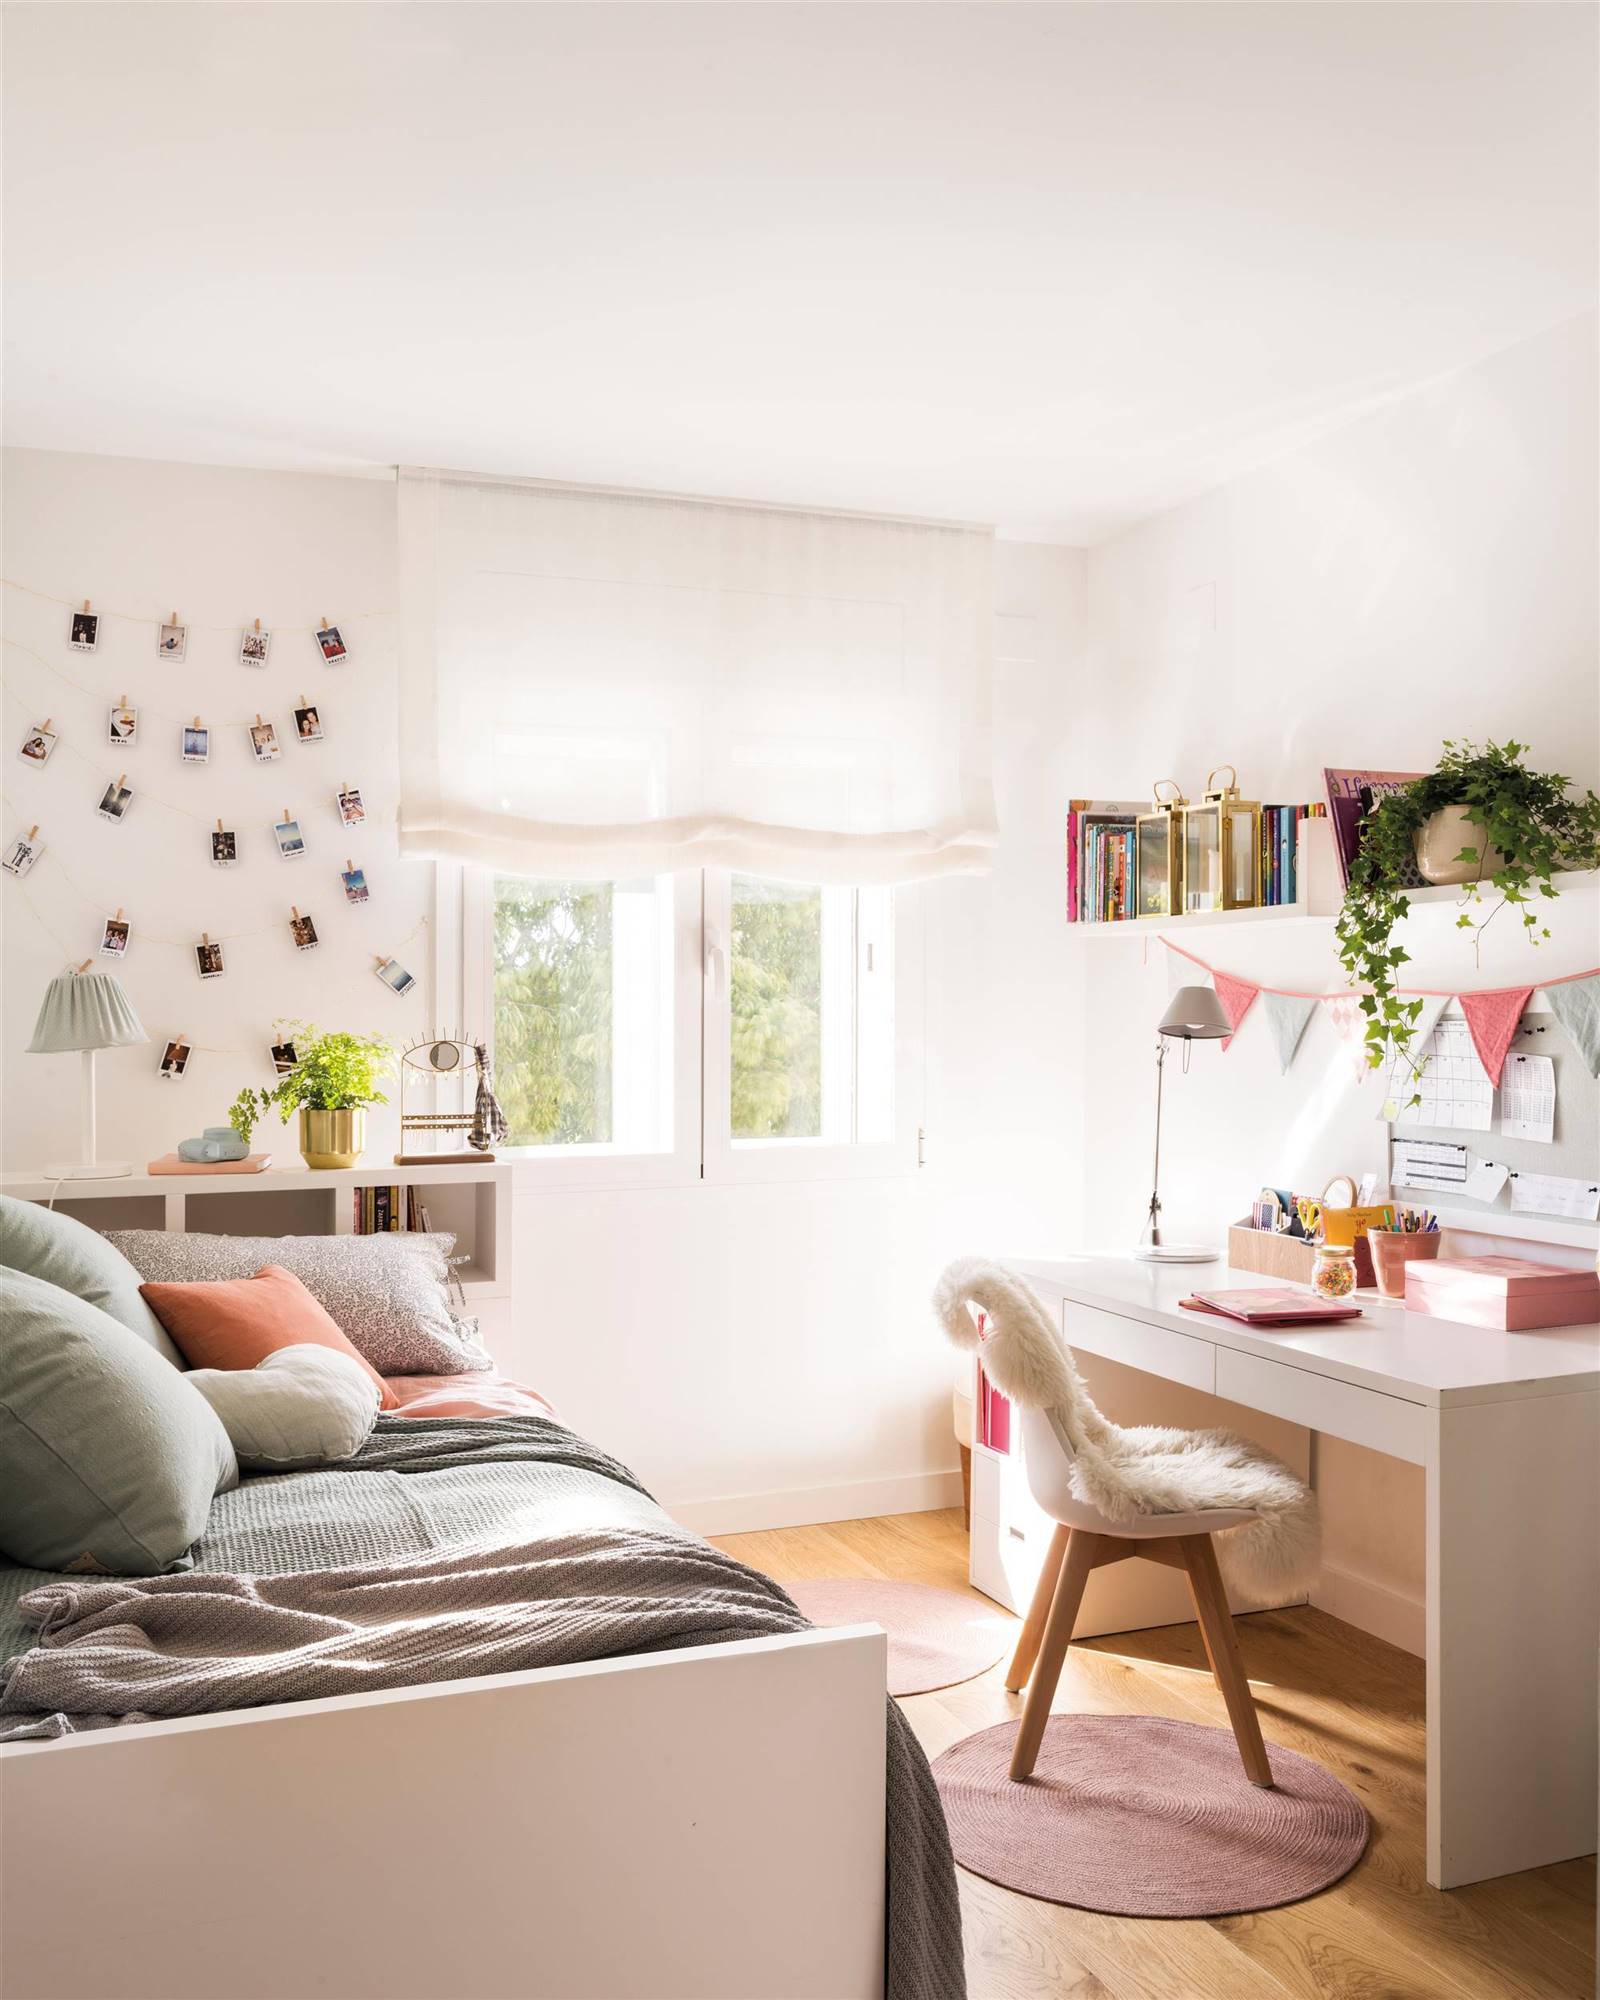 Dormitorio infantil con escritorio blanco, silla, cama, estor en la ventana y fotos colgadas en la pared. 